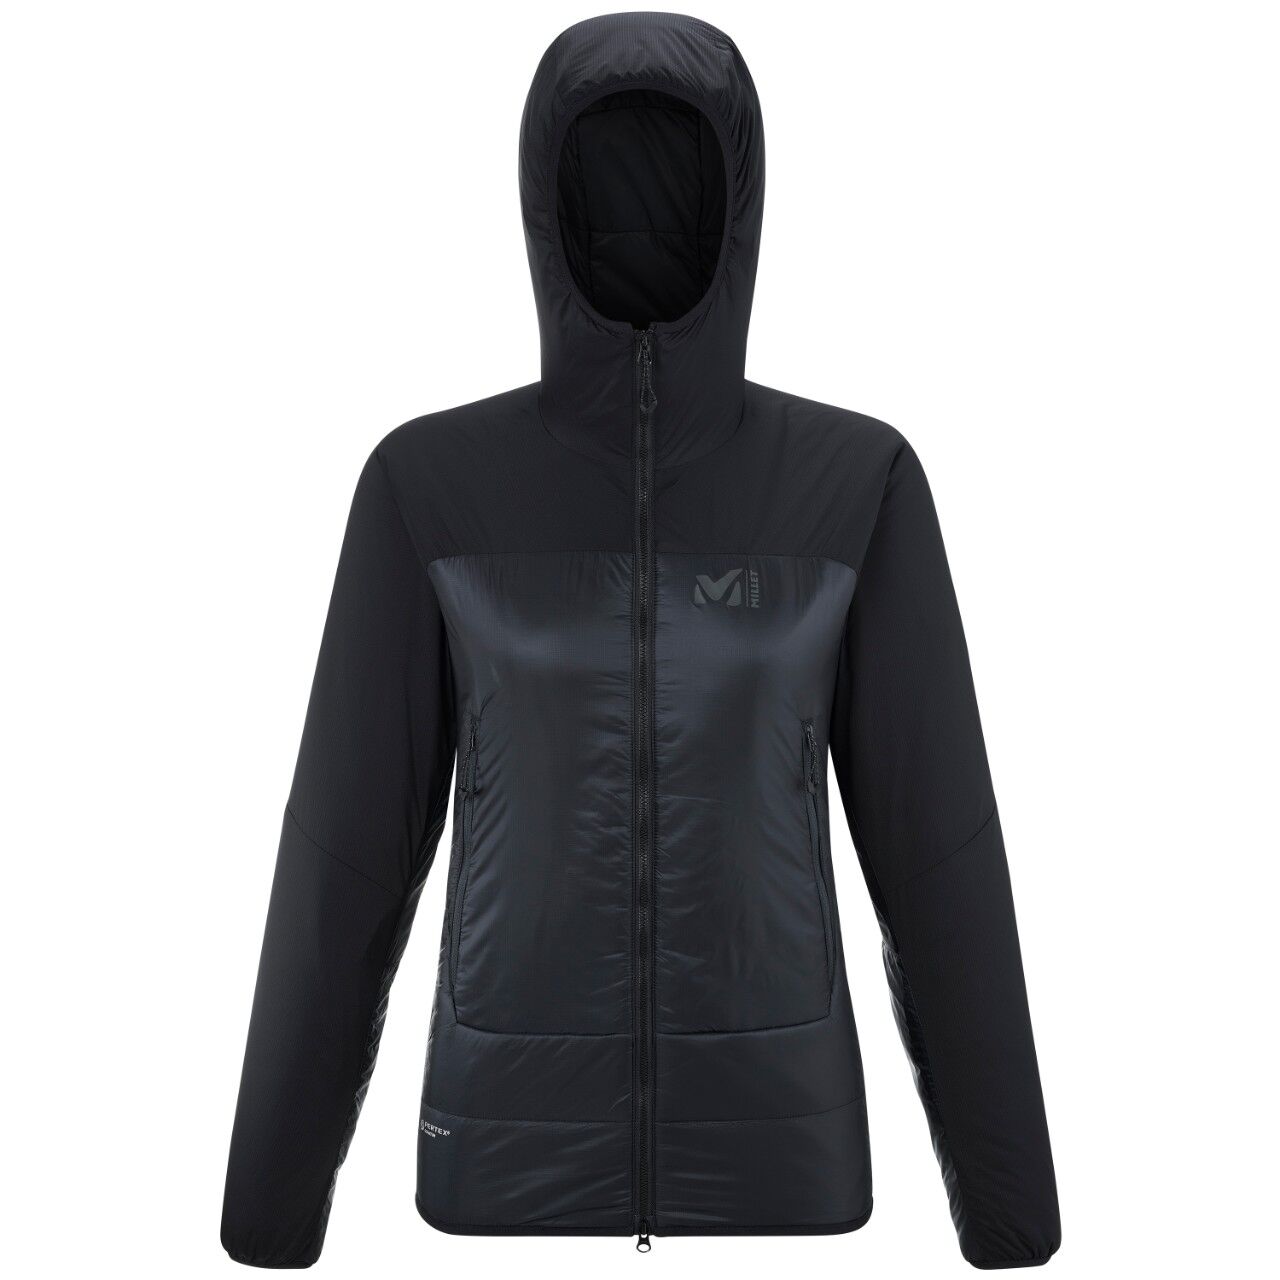 Millet Fusion Airwarm Hoodie - Down jacket - Women's